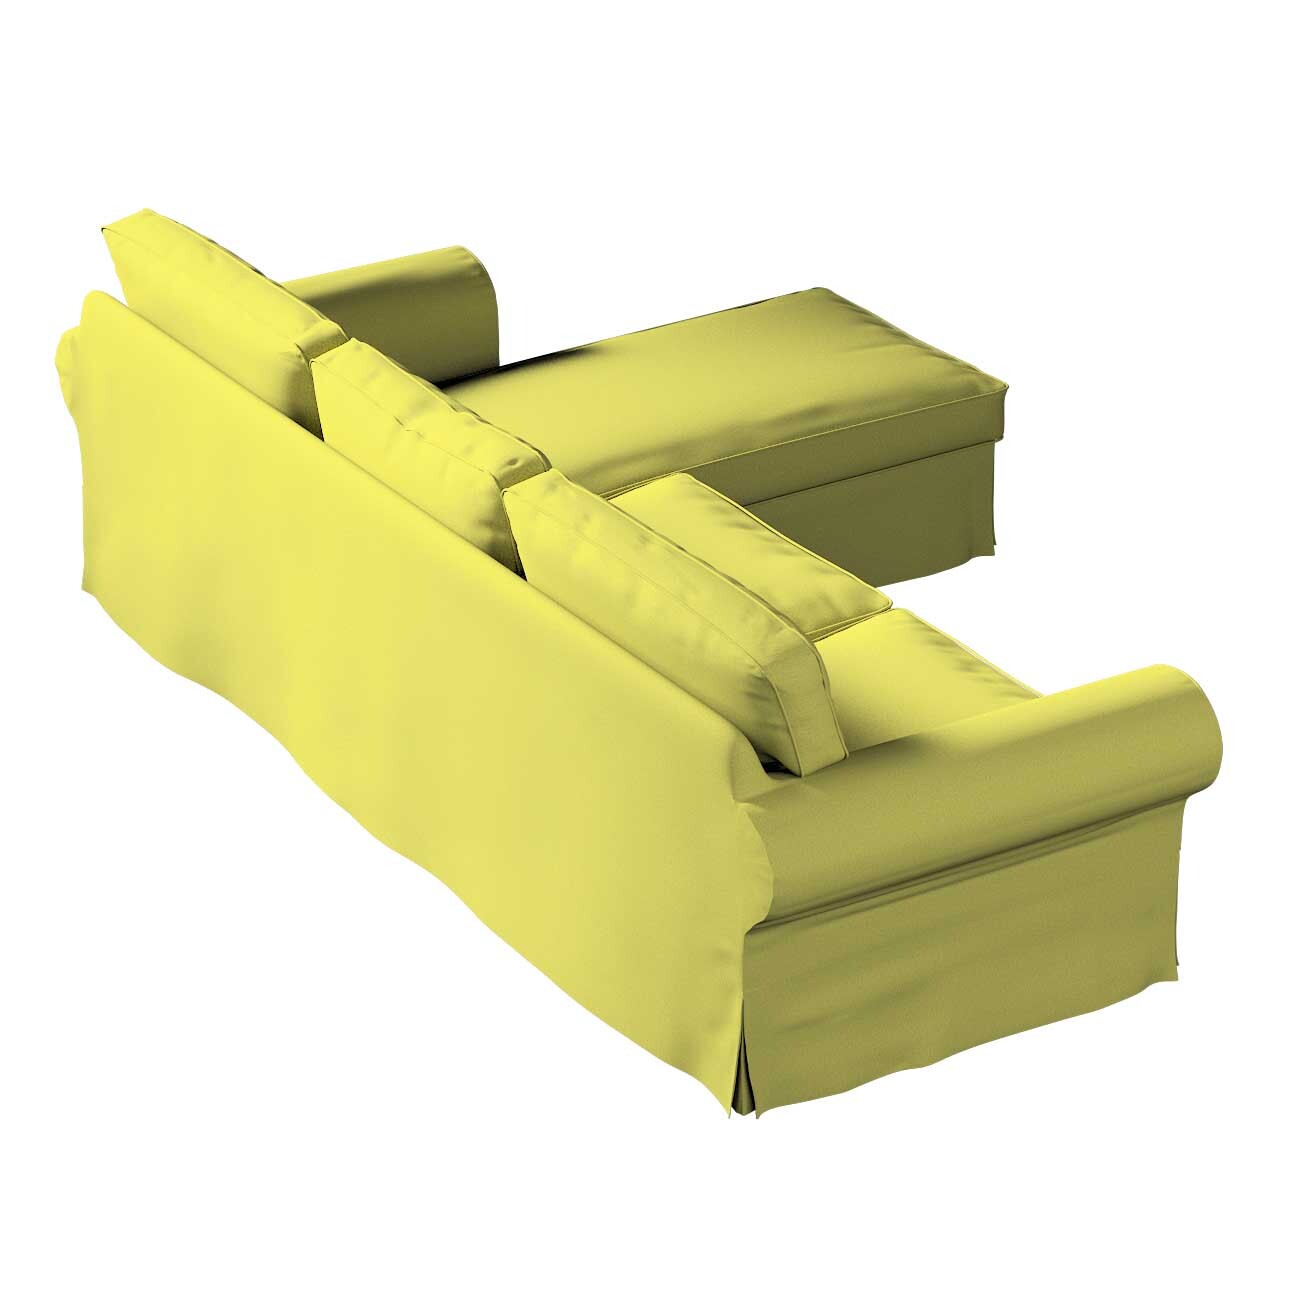 Bezug für Ektorp 2-Sitzer Sofa mit Recamiere, limone, Ektorp 2-Sitzer Sofab günstig online kaufen